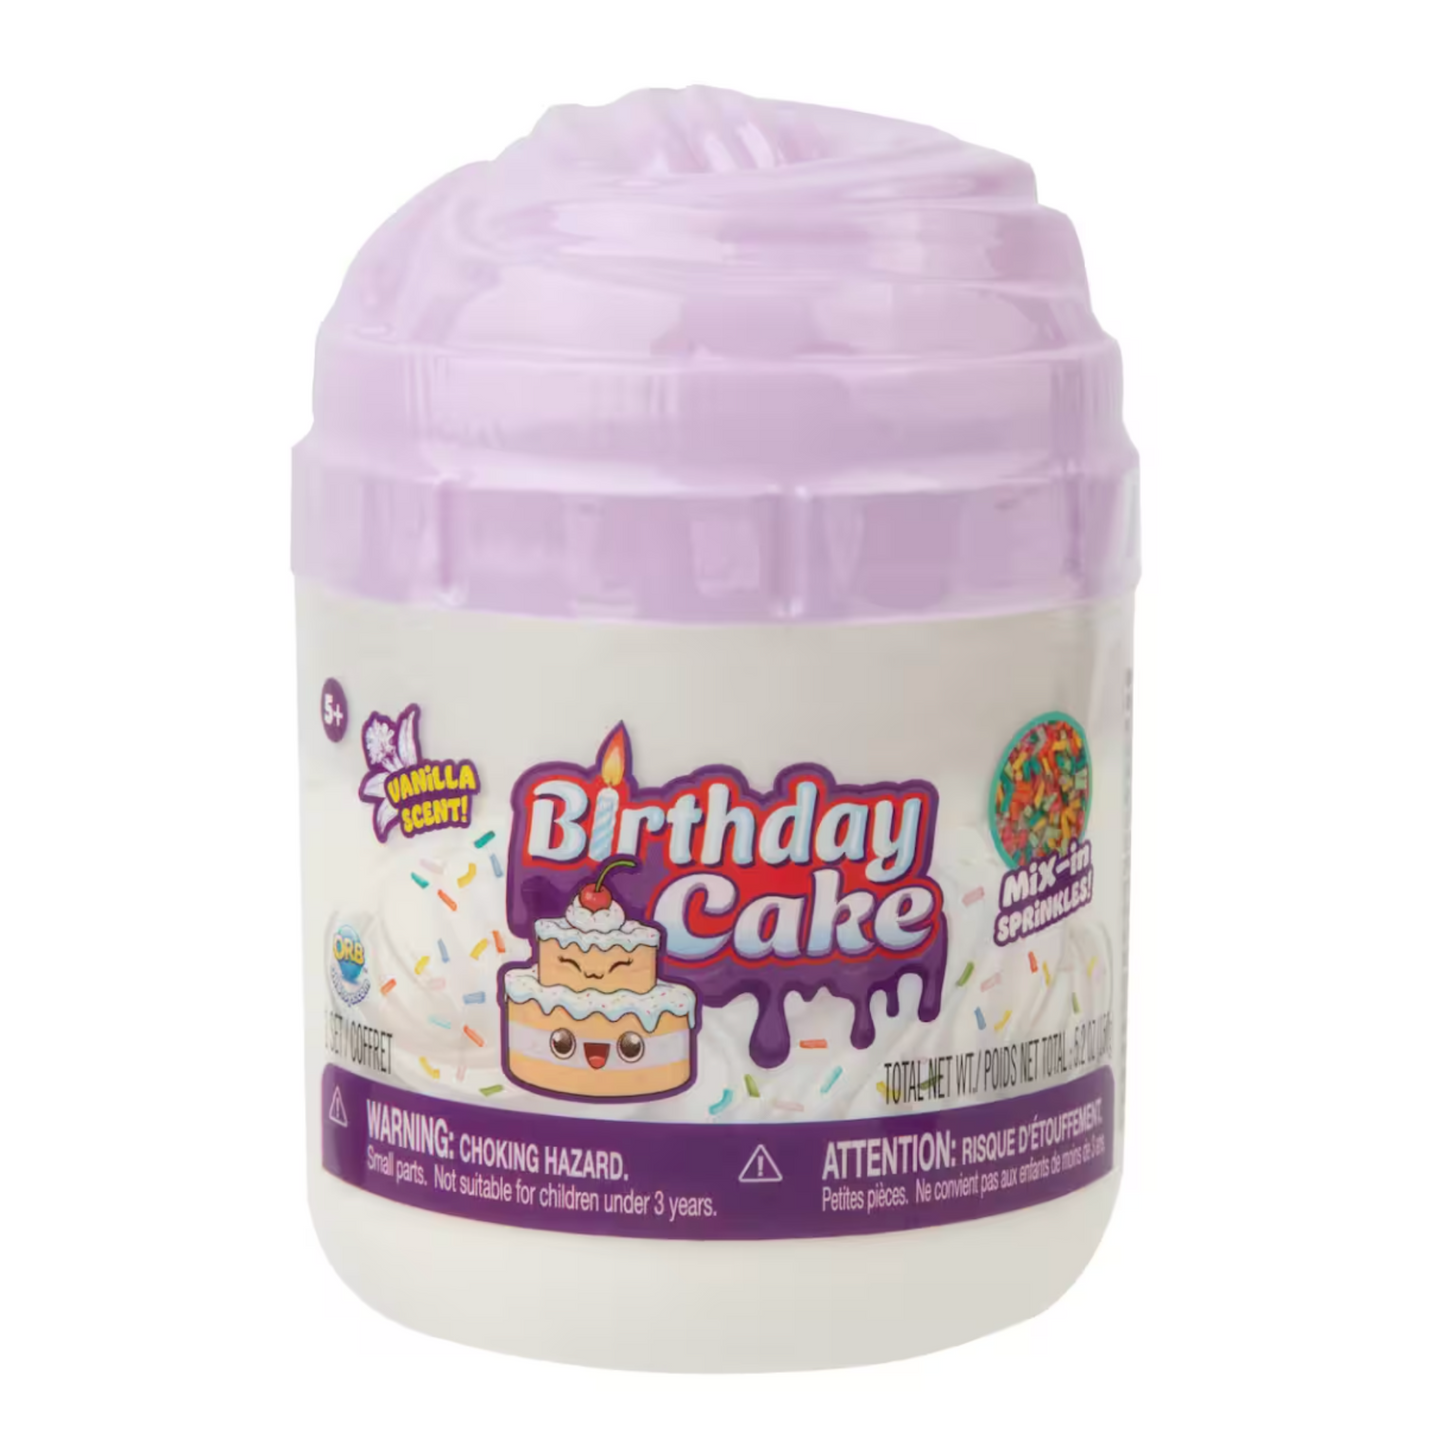 birthday cake slime for kids